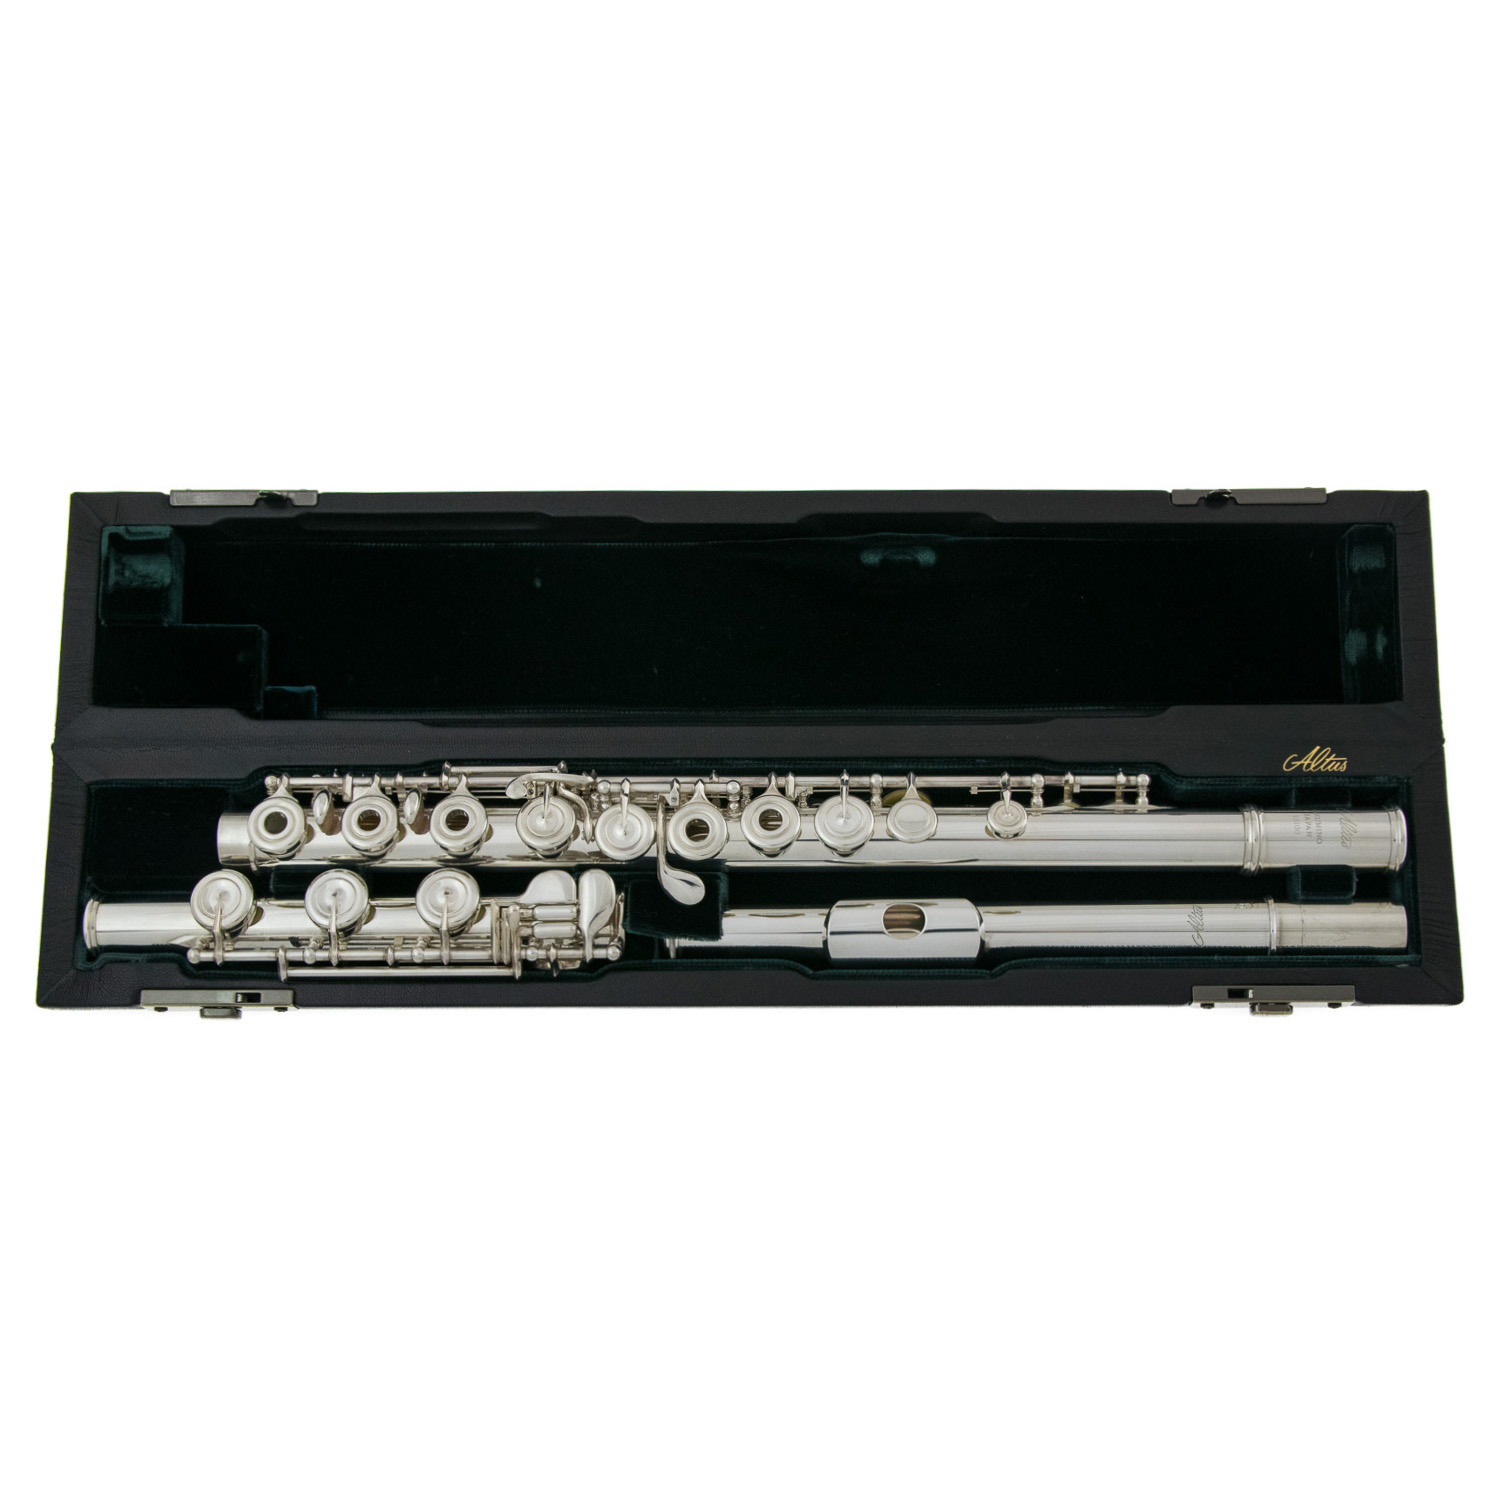 Altus Flute - 1807 (AL) BE